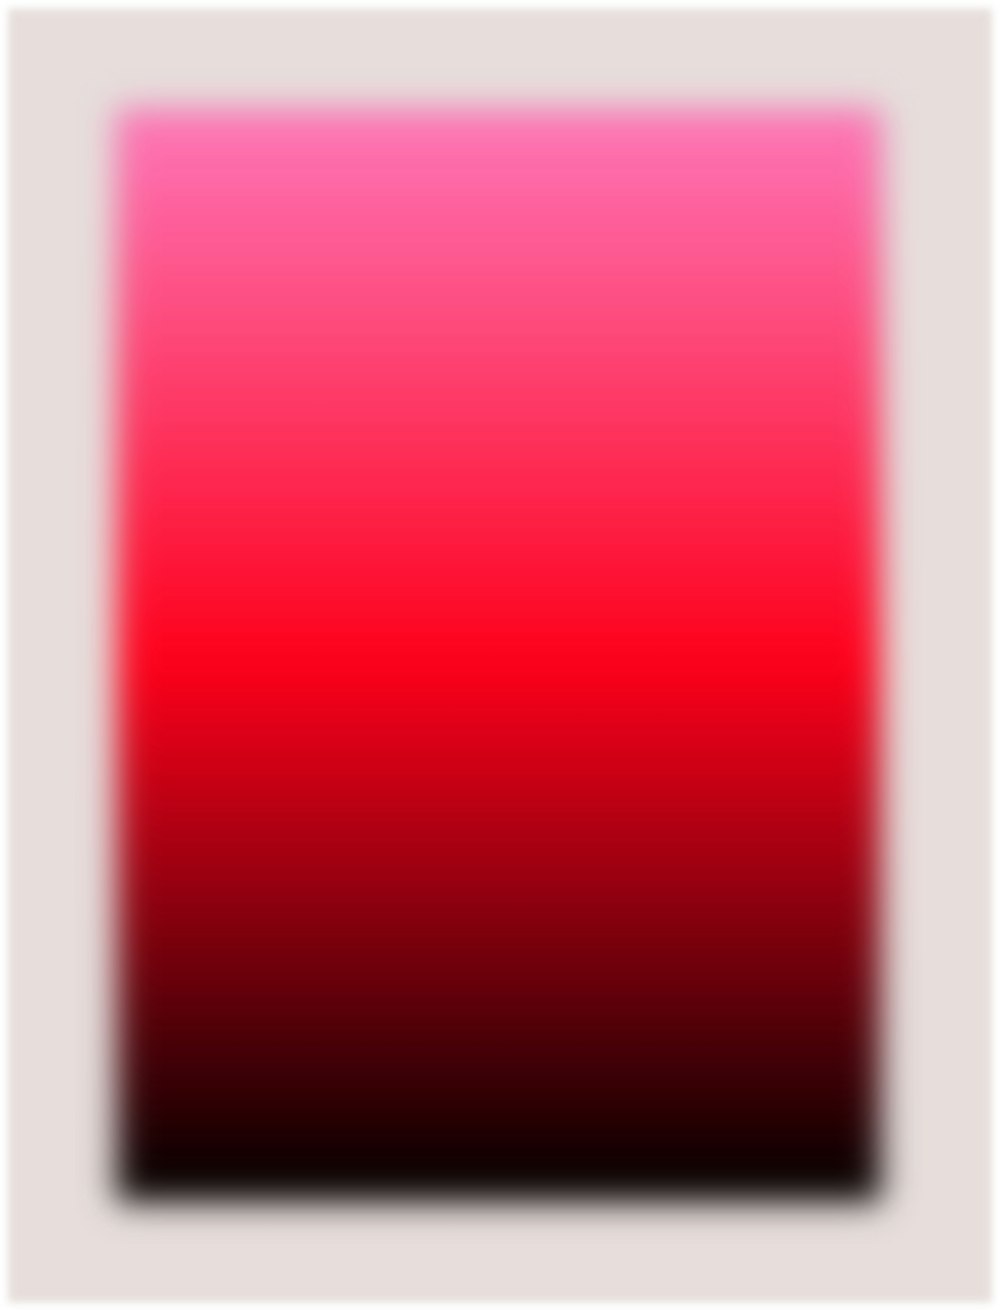 Ilustración de marco rojo y blanco